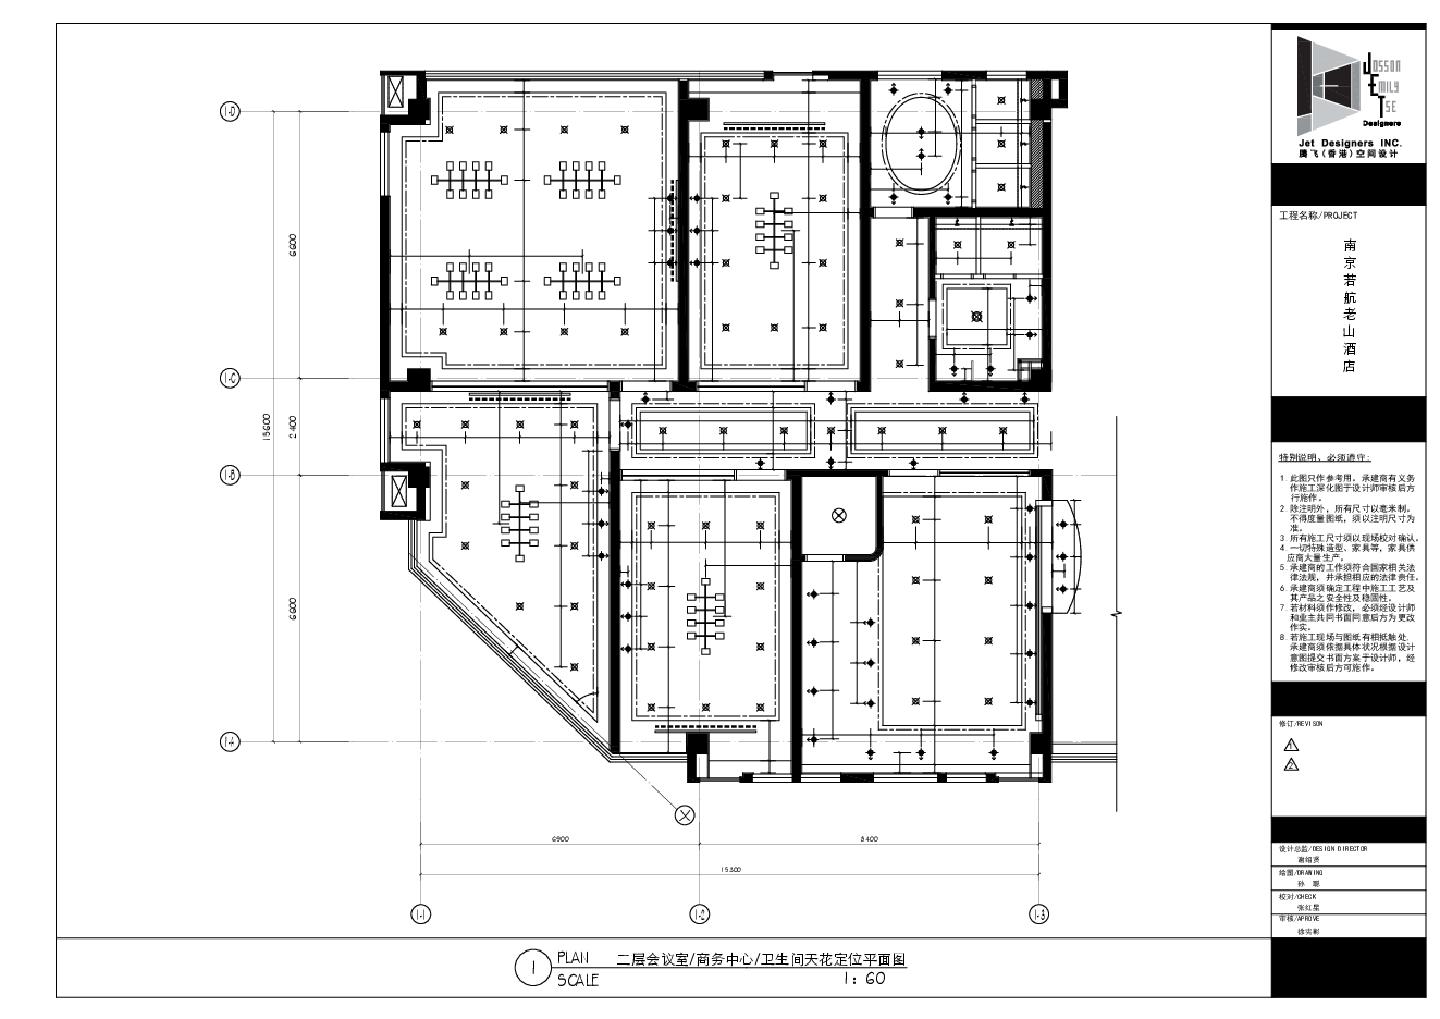 南京若航老山酒店-2F会议室商务中心及卫生间装饰设计平面CAD图